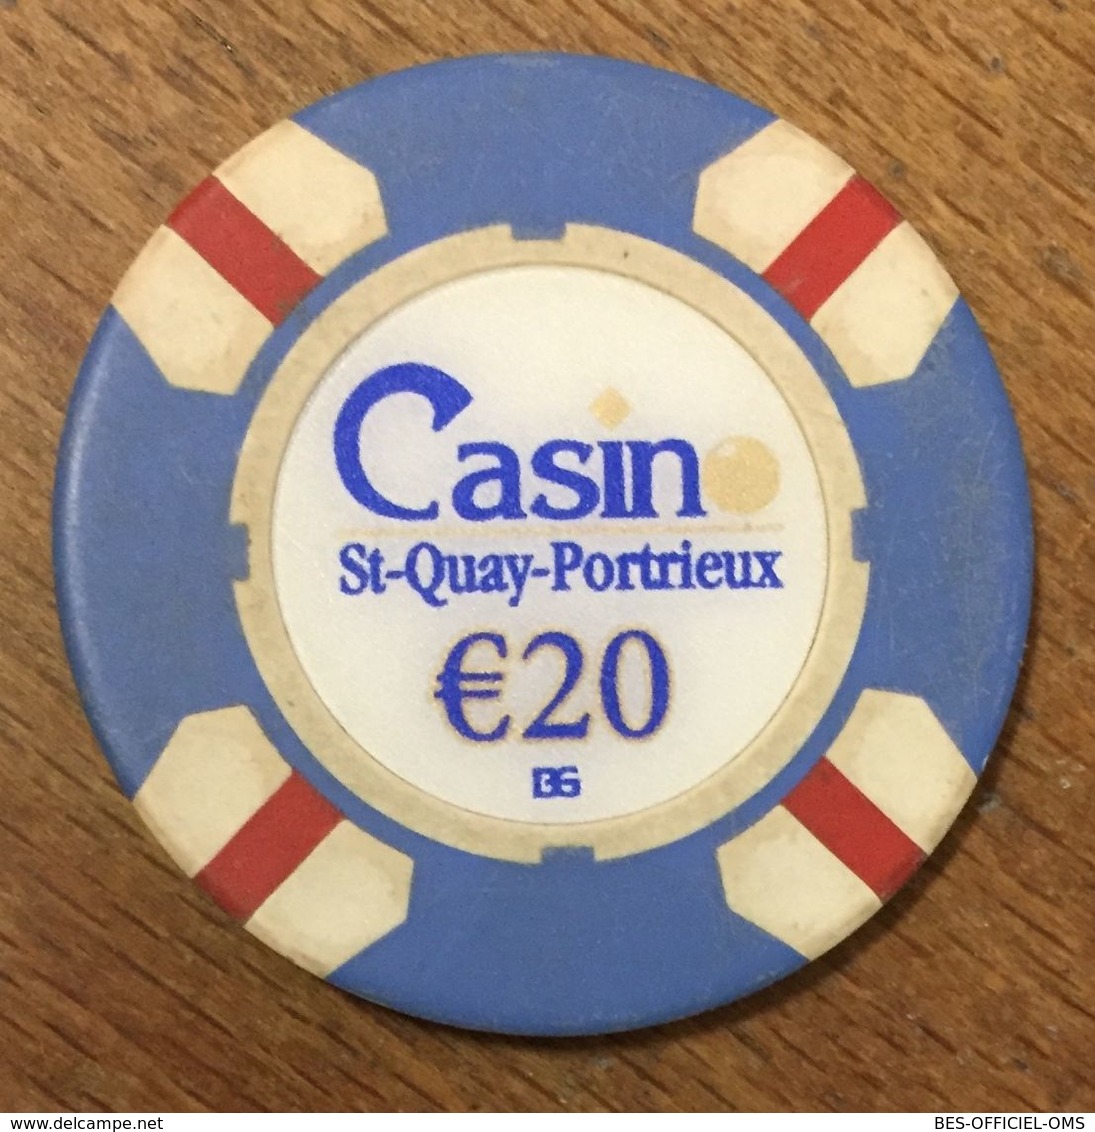 22 SAINT QUAY PORTRIEUX CASINO JETON 20 EUROS CHIP COINS TOKENS GAMING - Casino